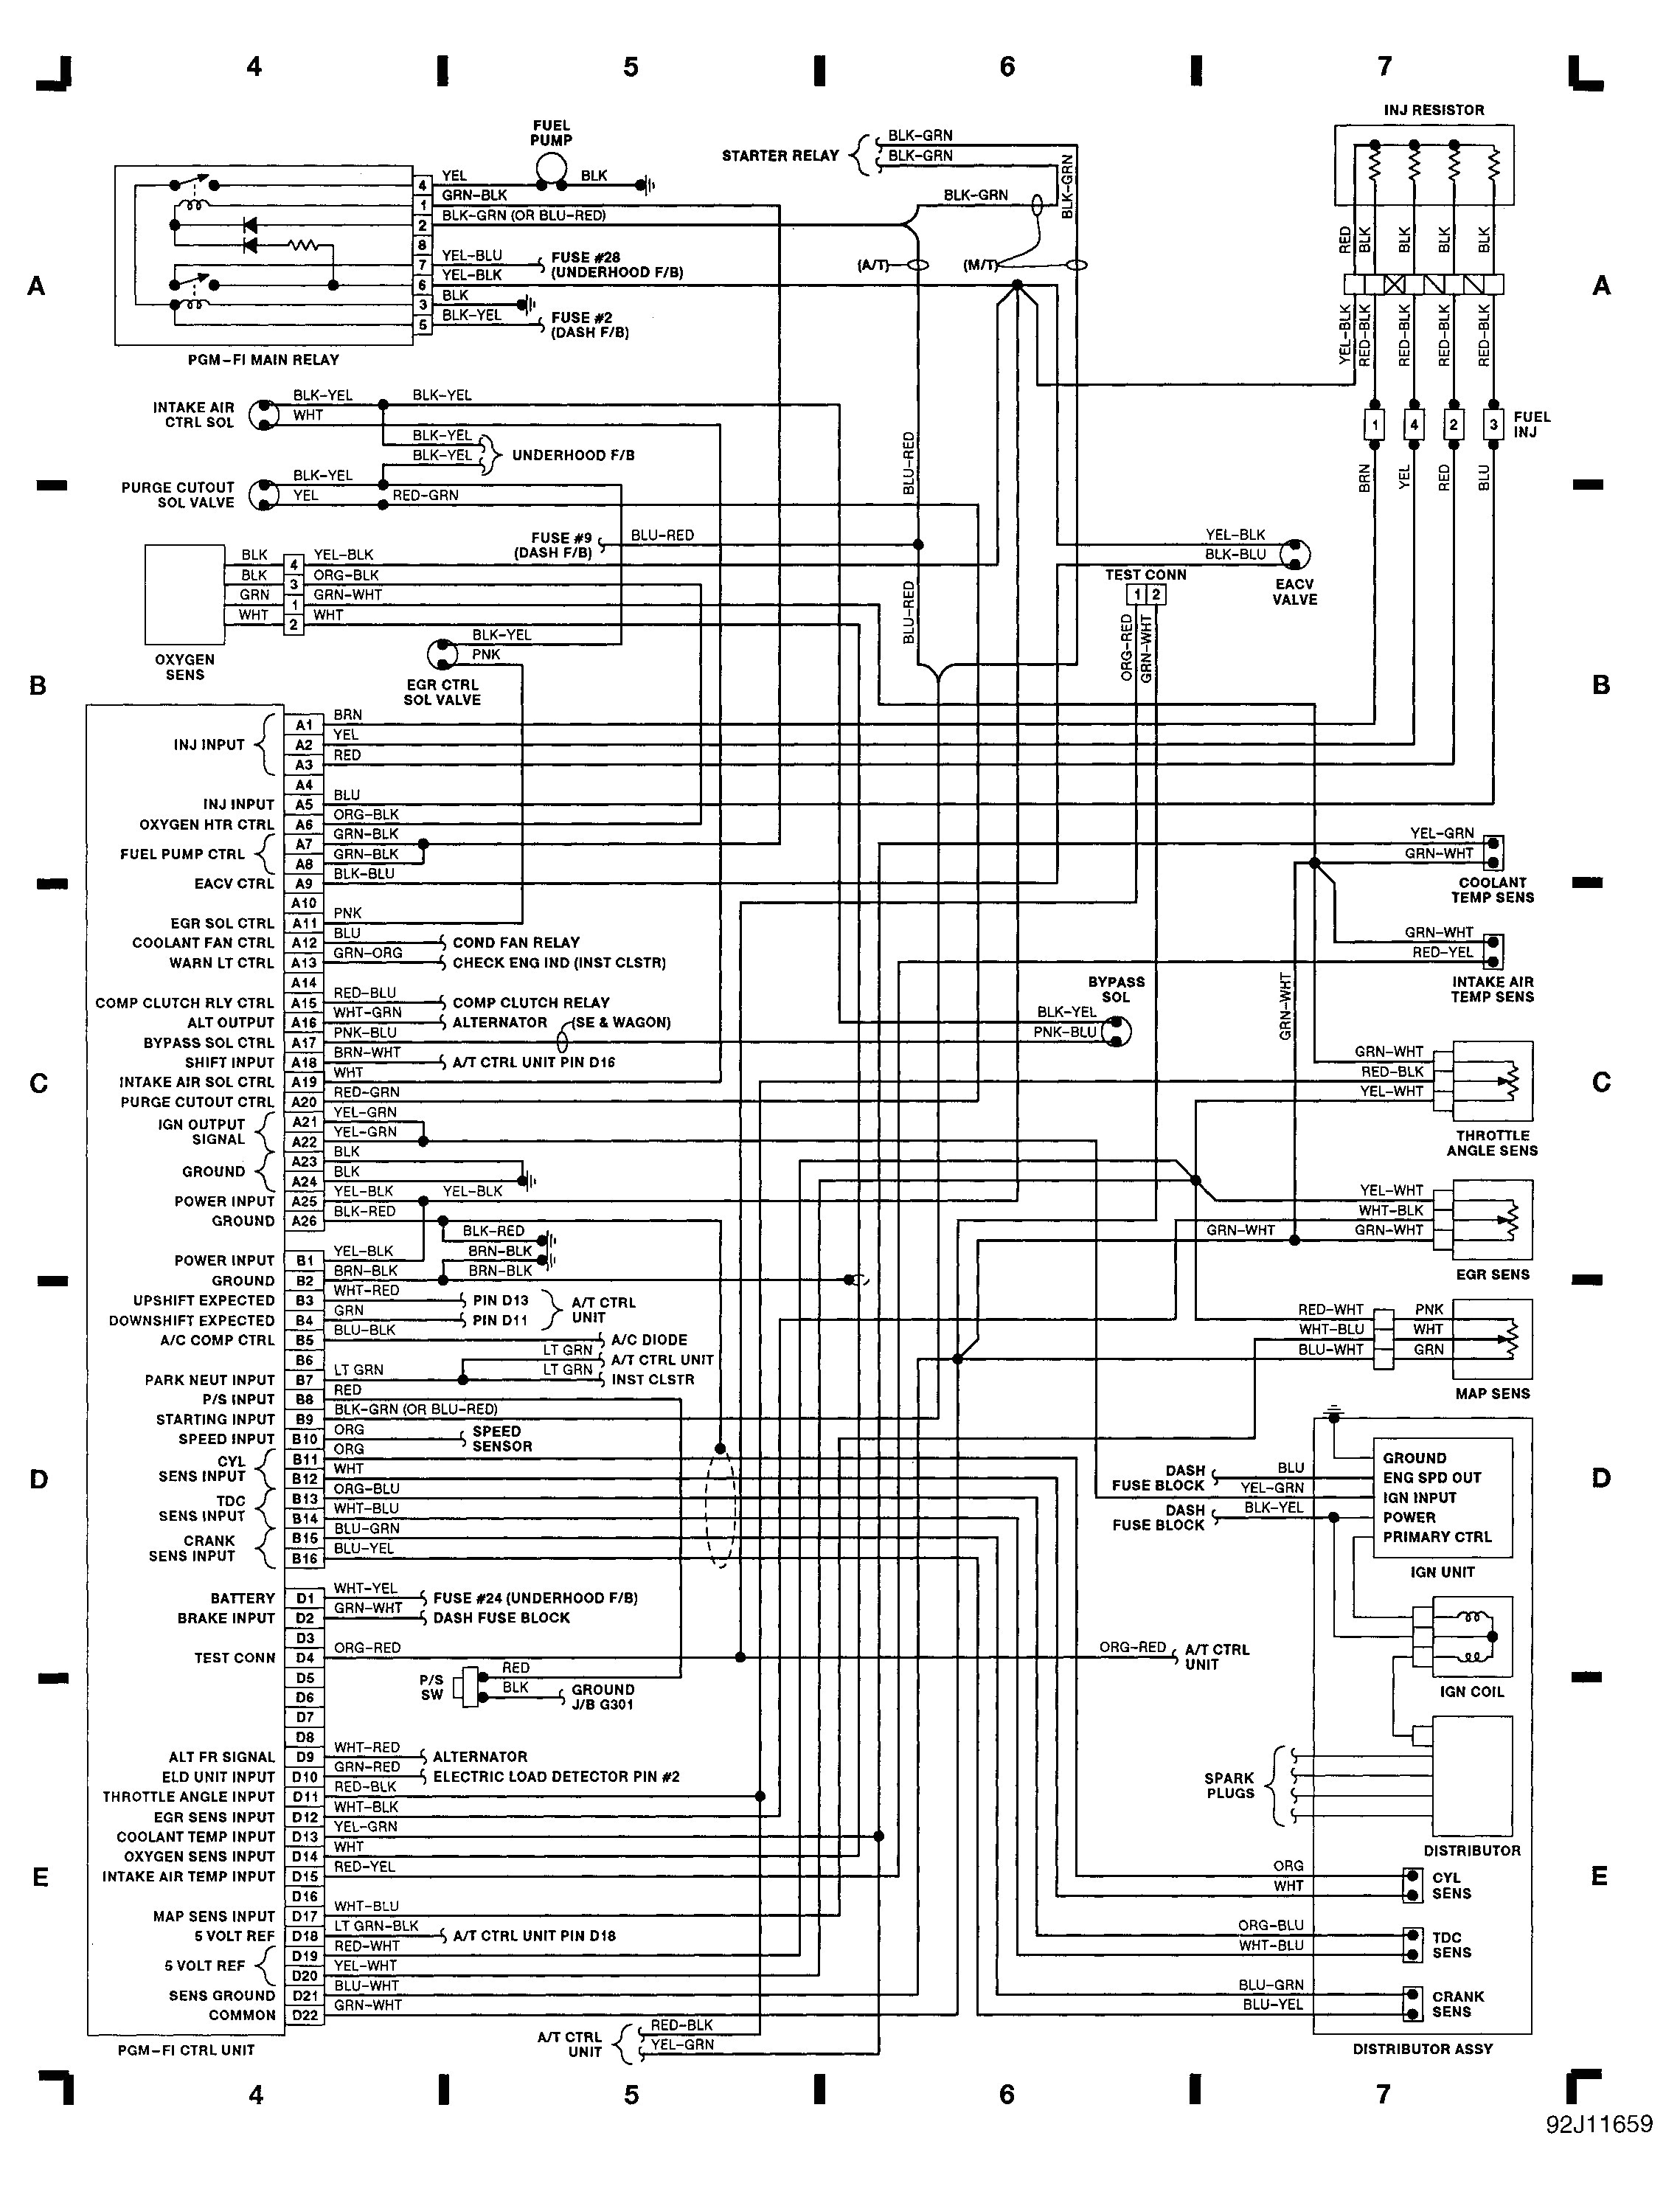 2005 honda accord wiring diagrams wiring diagram fascinating 05 honda wiring diagram manual e book 2005